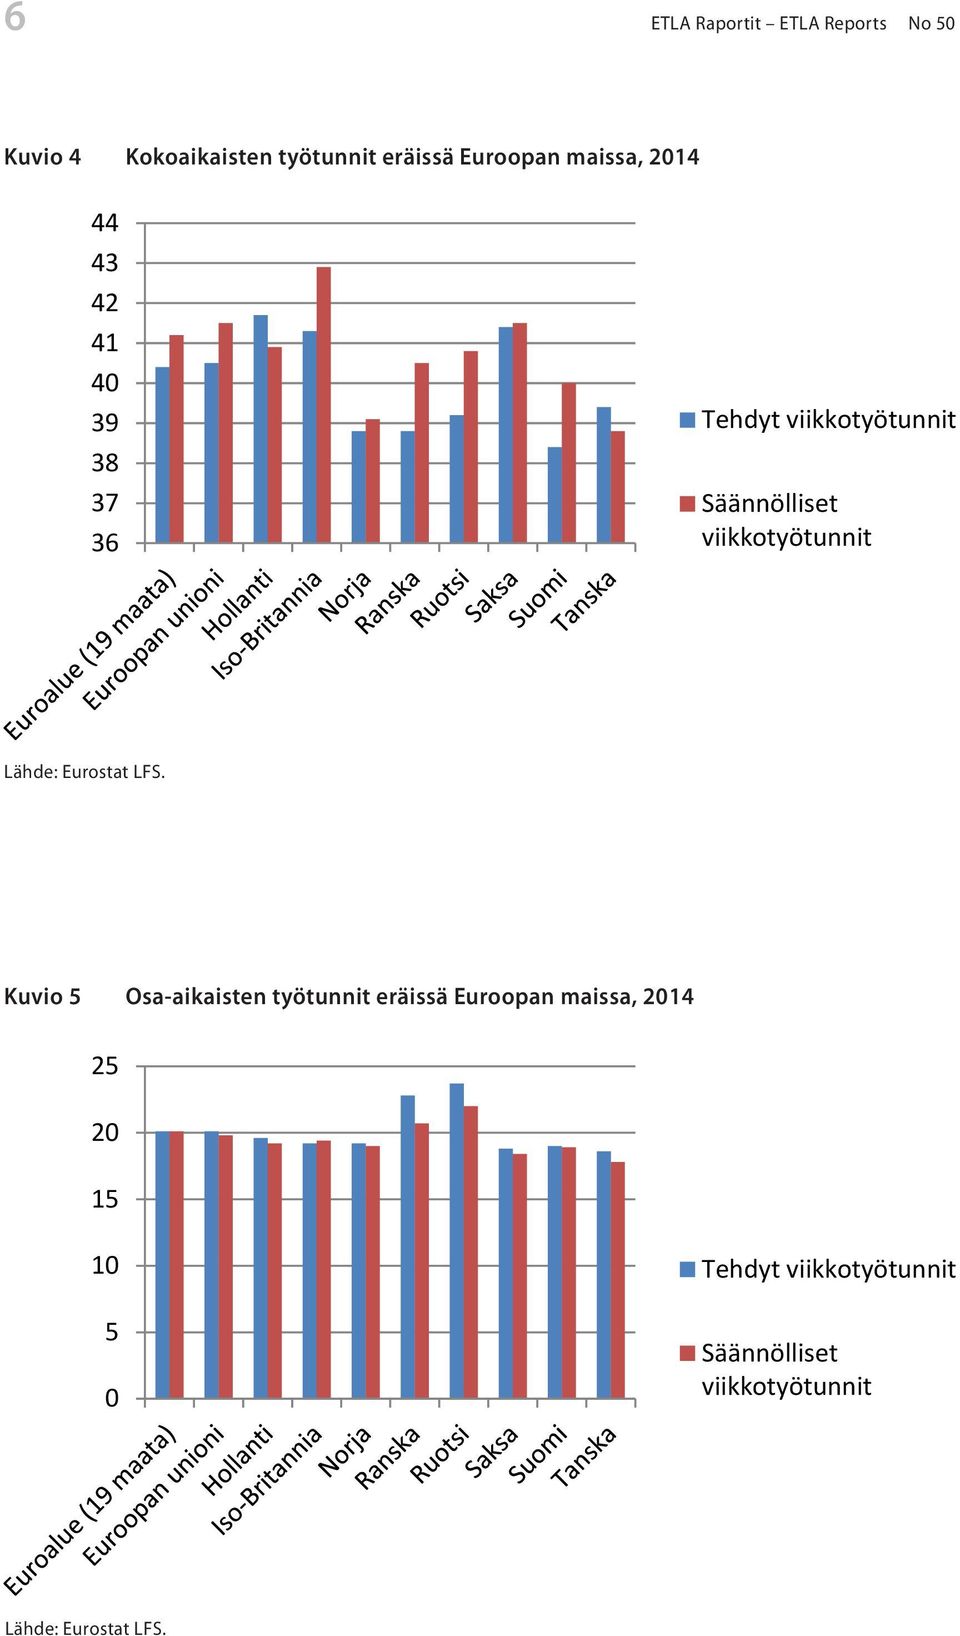 esitetty kokoaikaisten keskimääräiset työtunnit eri Euroopan maissa. EU-maissa tehtyj Lähde: Eurostat LFS. viikkotuntien keskiarvo on 40.5 tuntia viikossa.